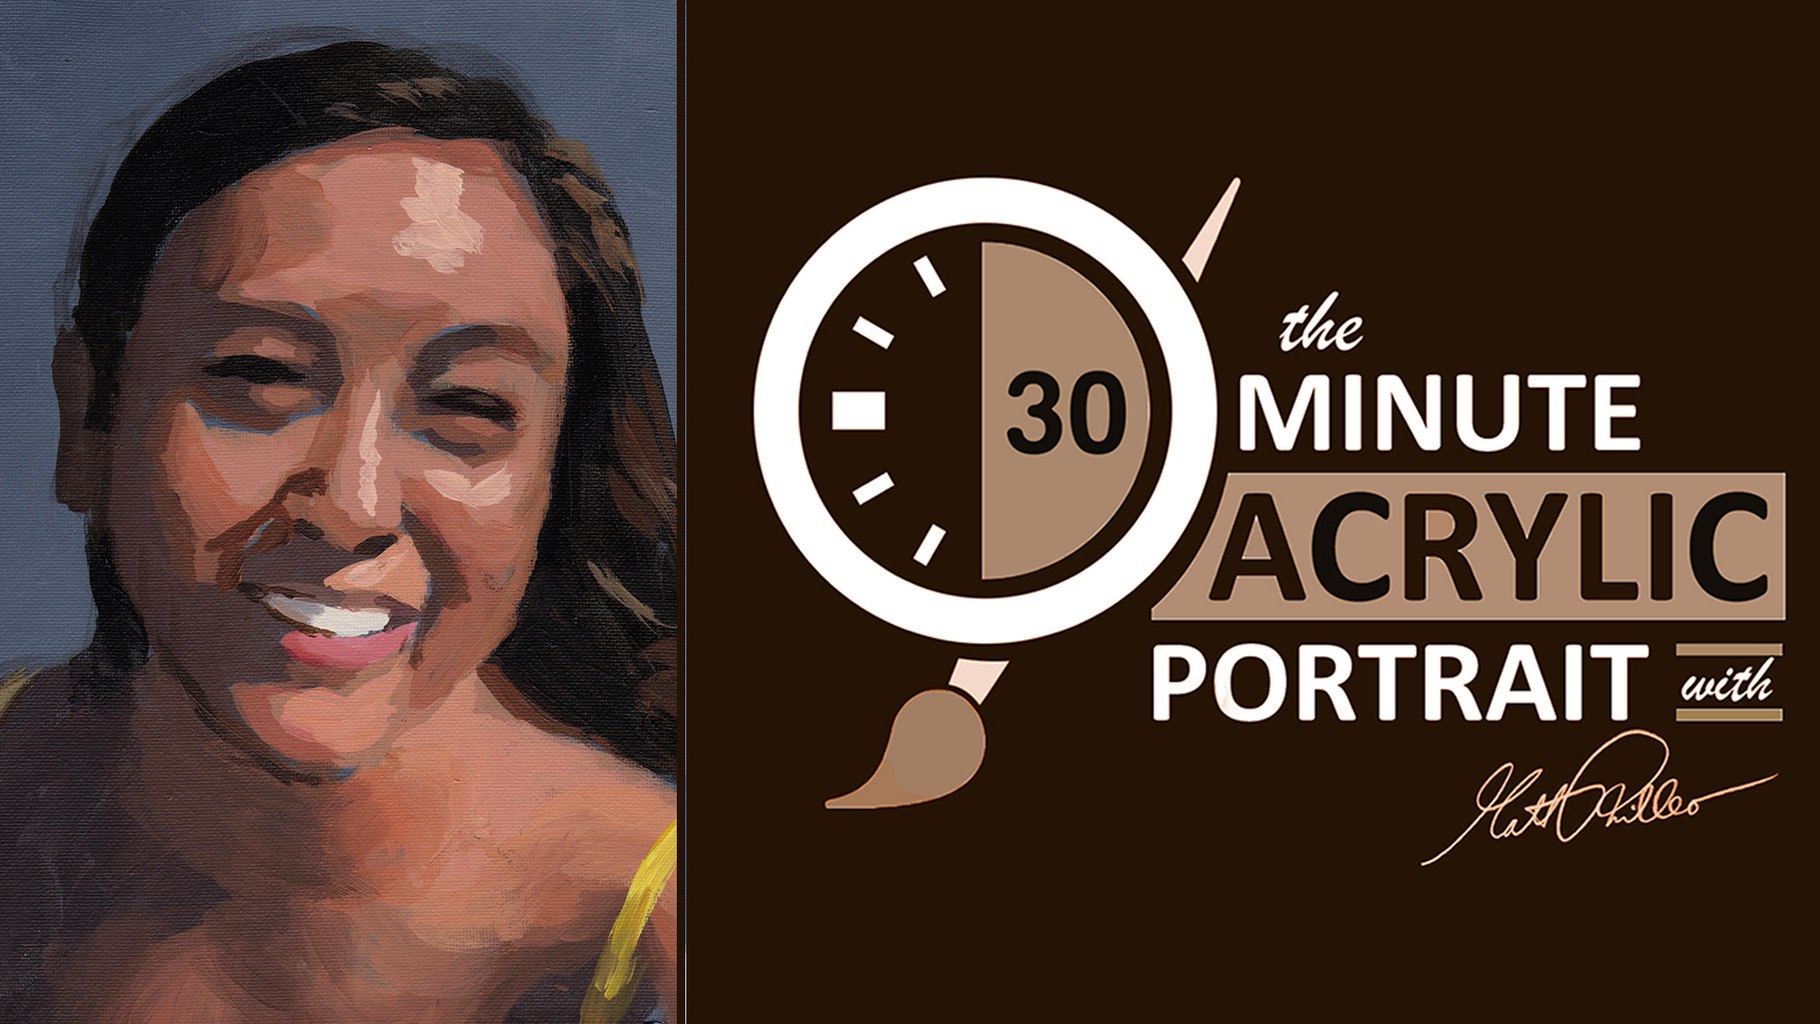 Paint 30 minute acrylic portrait